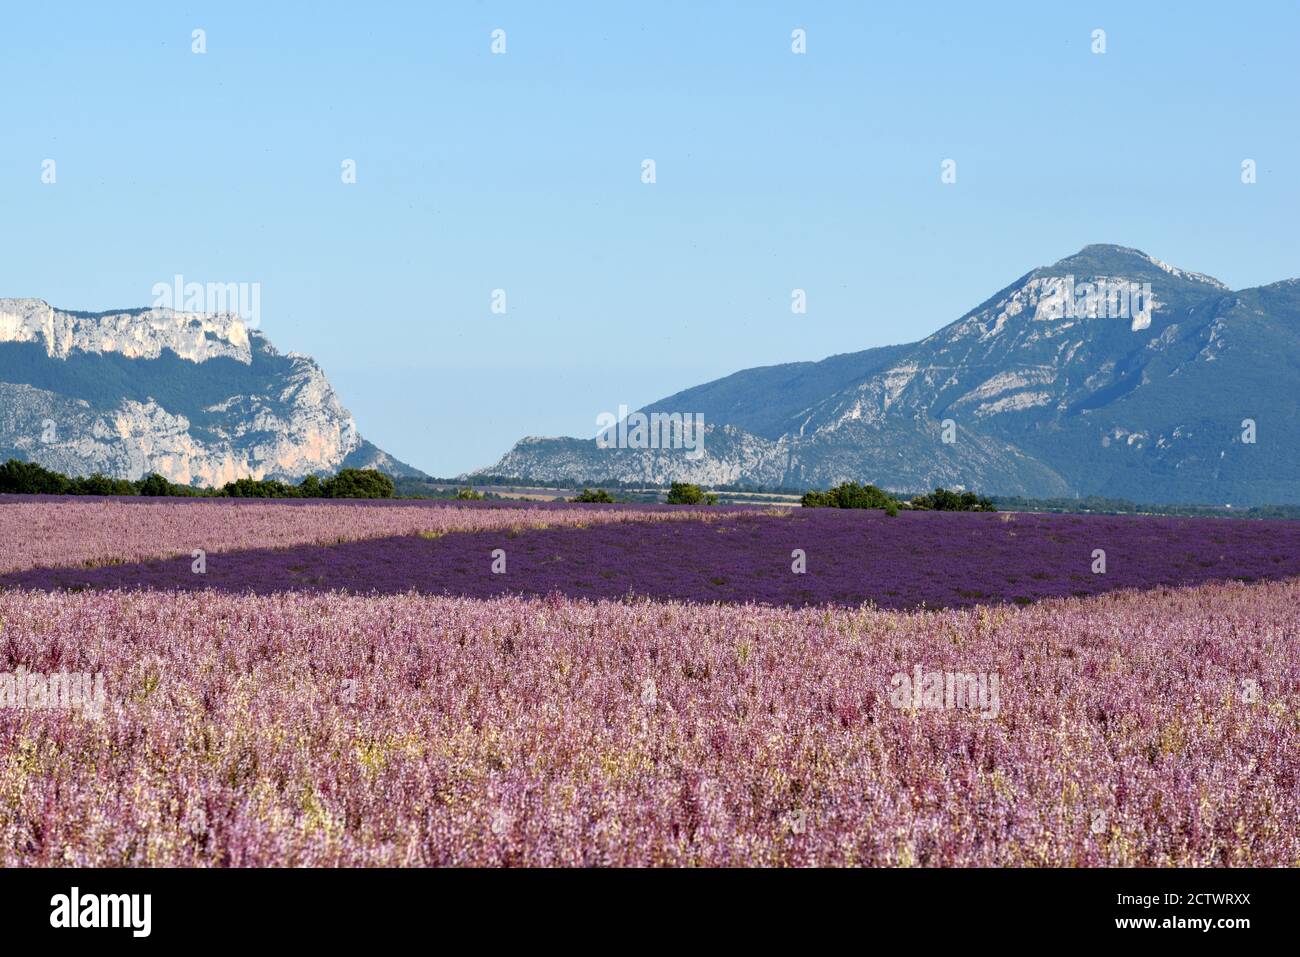 Paysage violet ou lilas des champs de sauge de Clary, de la région de Salvia et de la lavande sur le plateau de Valensole et les collines des Alpes françaises basses Provence France Banque D'Images